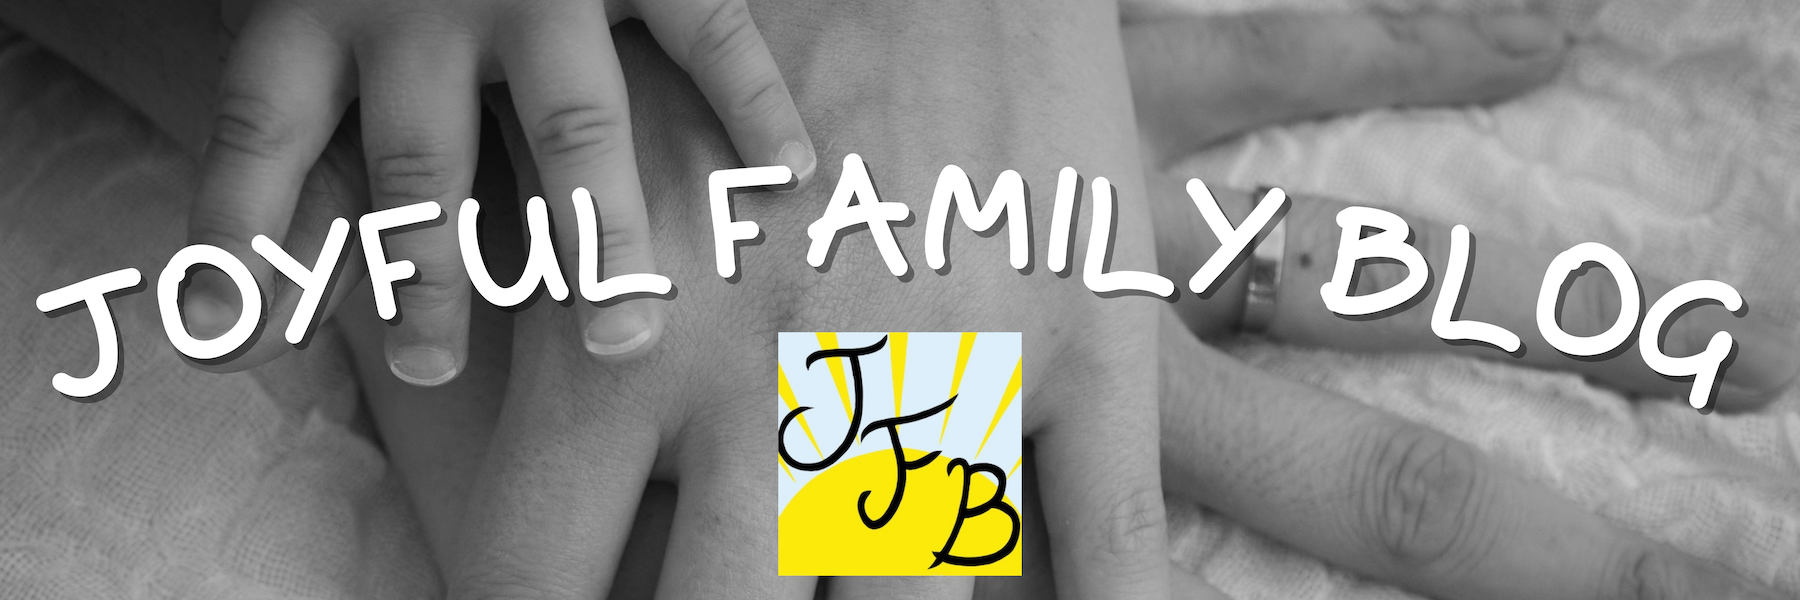 Joyful Family Blog